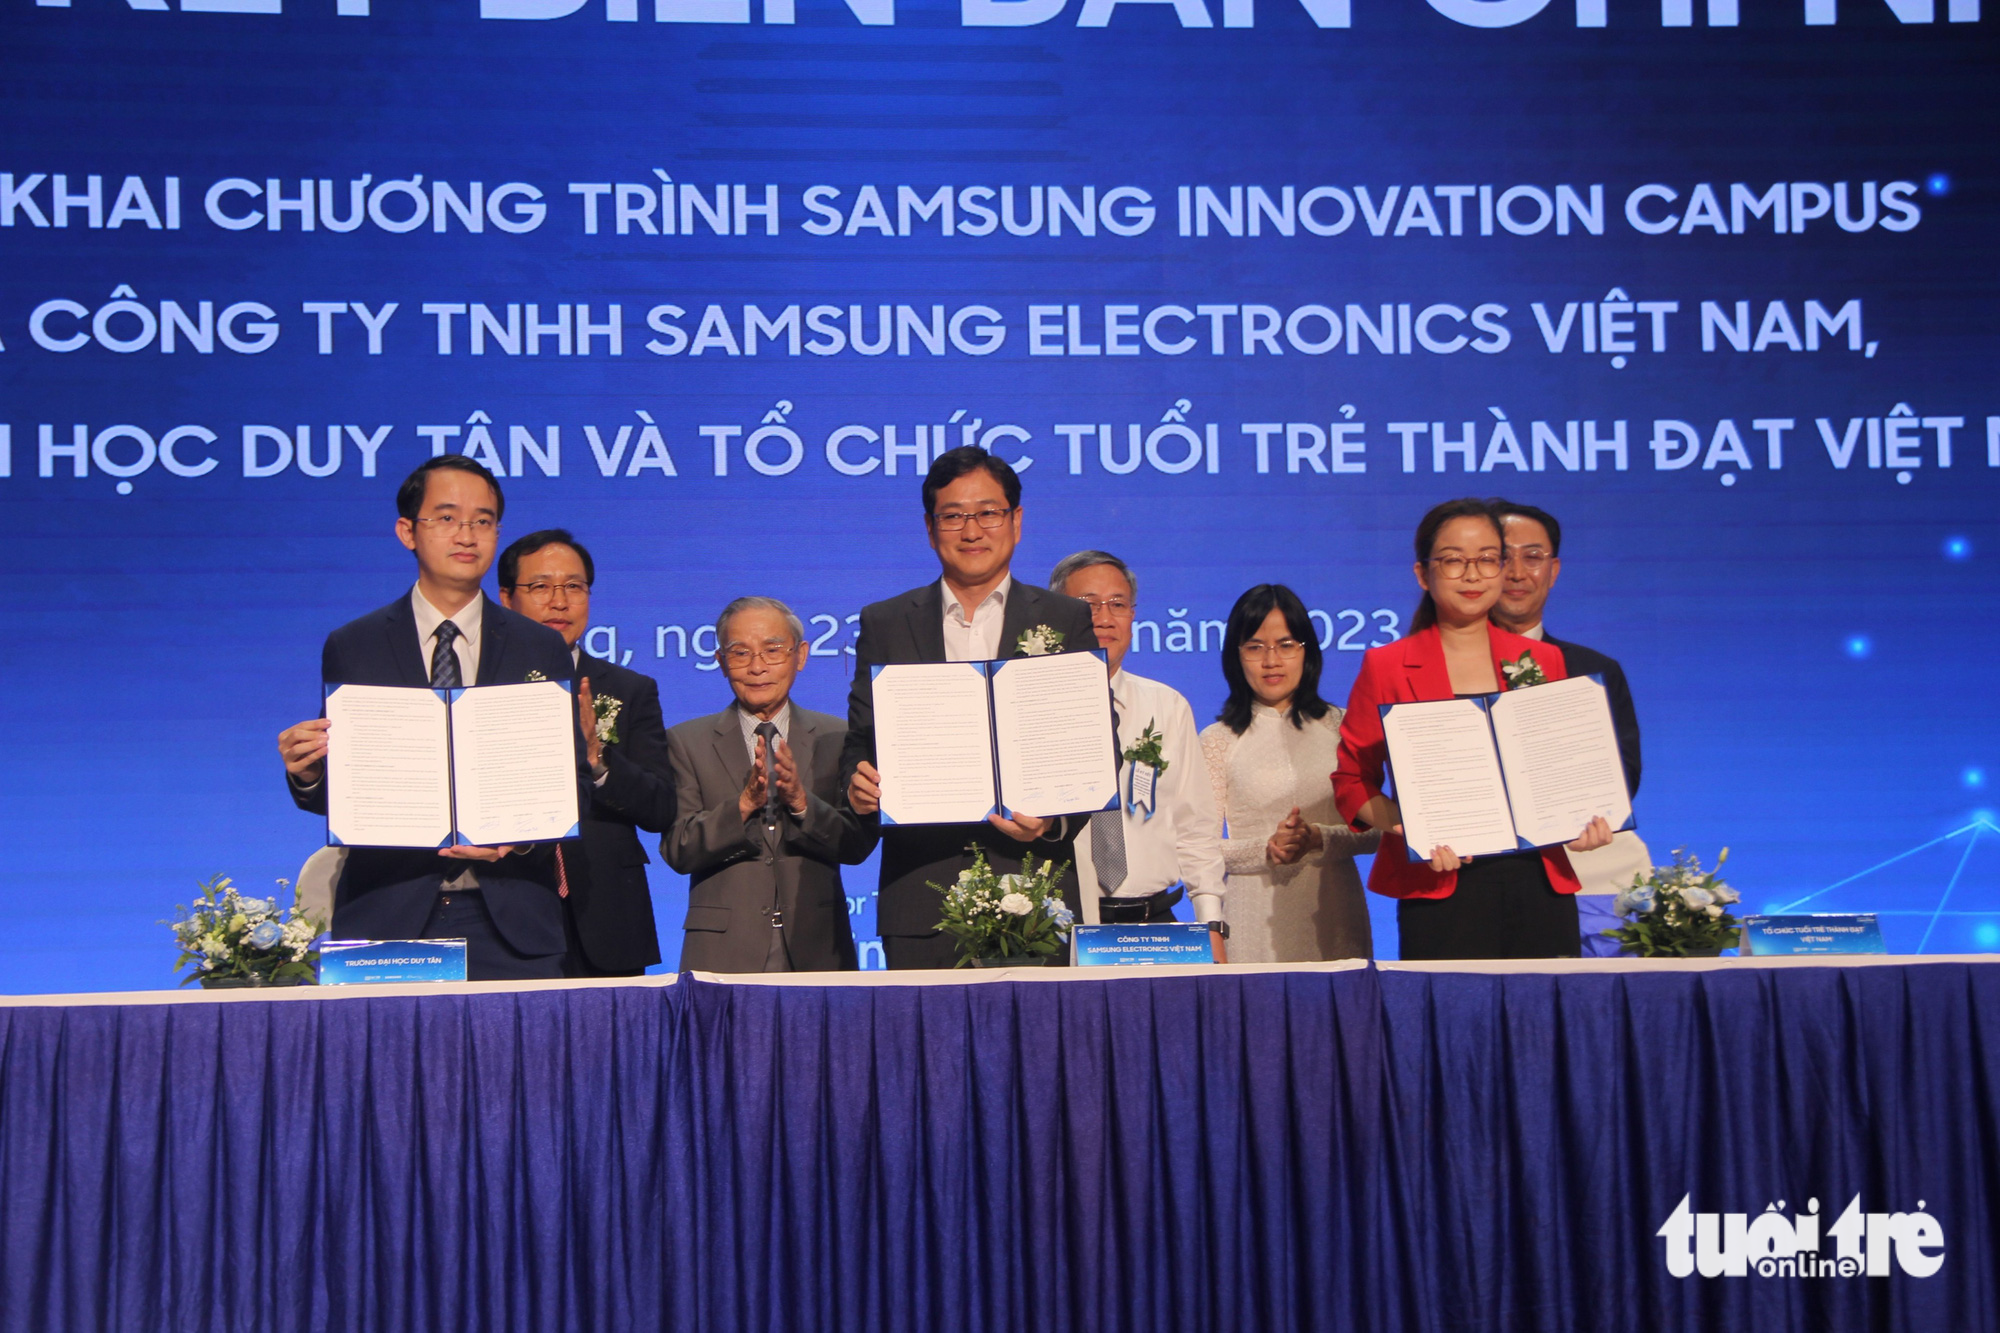 Đại diện Tổ hợp Samsung Việt Nam, Tổ chức Thanh niên Thành công Việt Nam và Đại học Duy Tín ký kết hợp đồng triển khai chương trình Samsung Innovation Park - Ảnh: TRƯỜNG TRƯỜNG